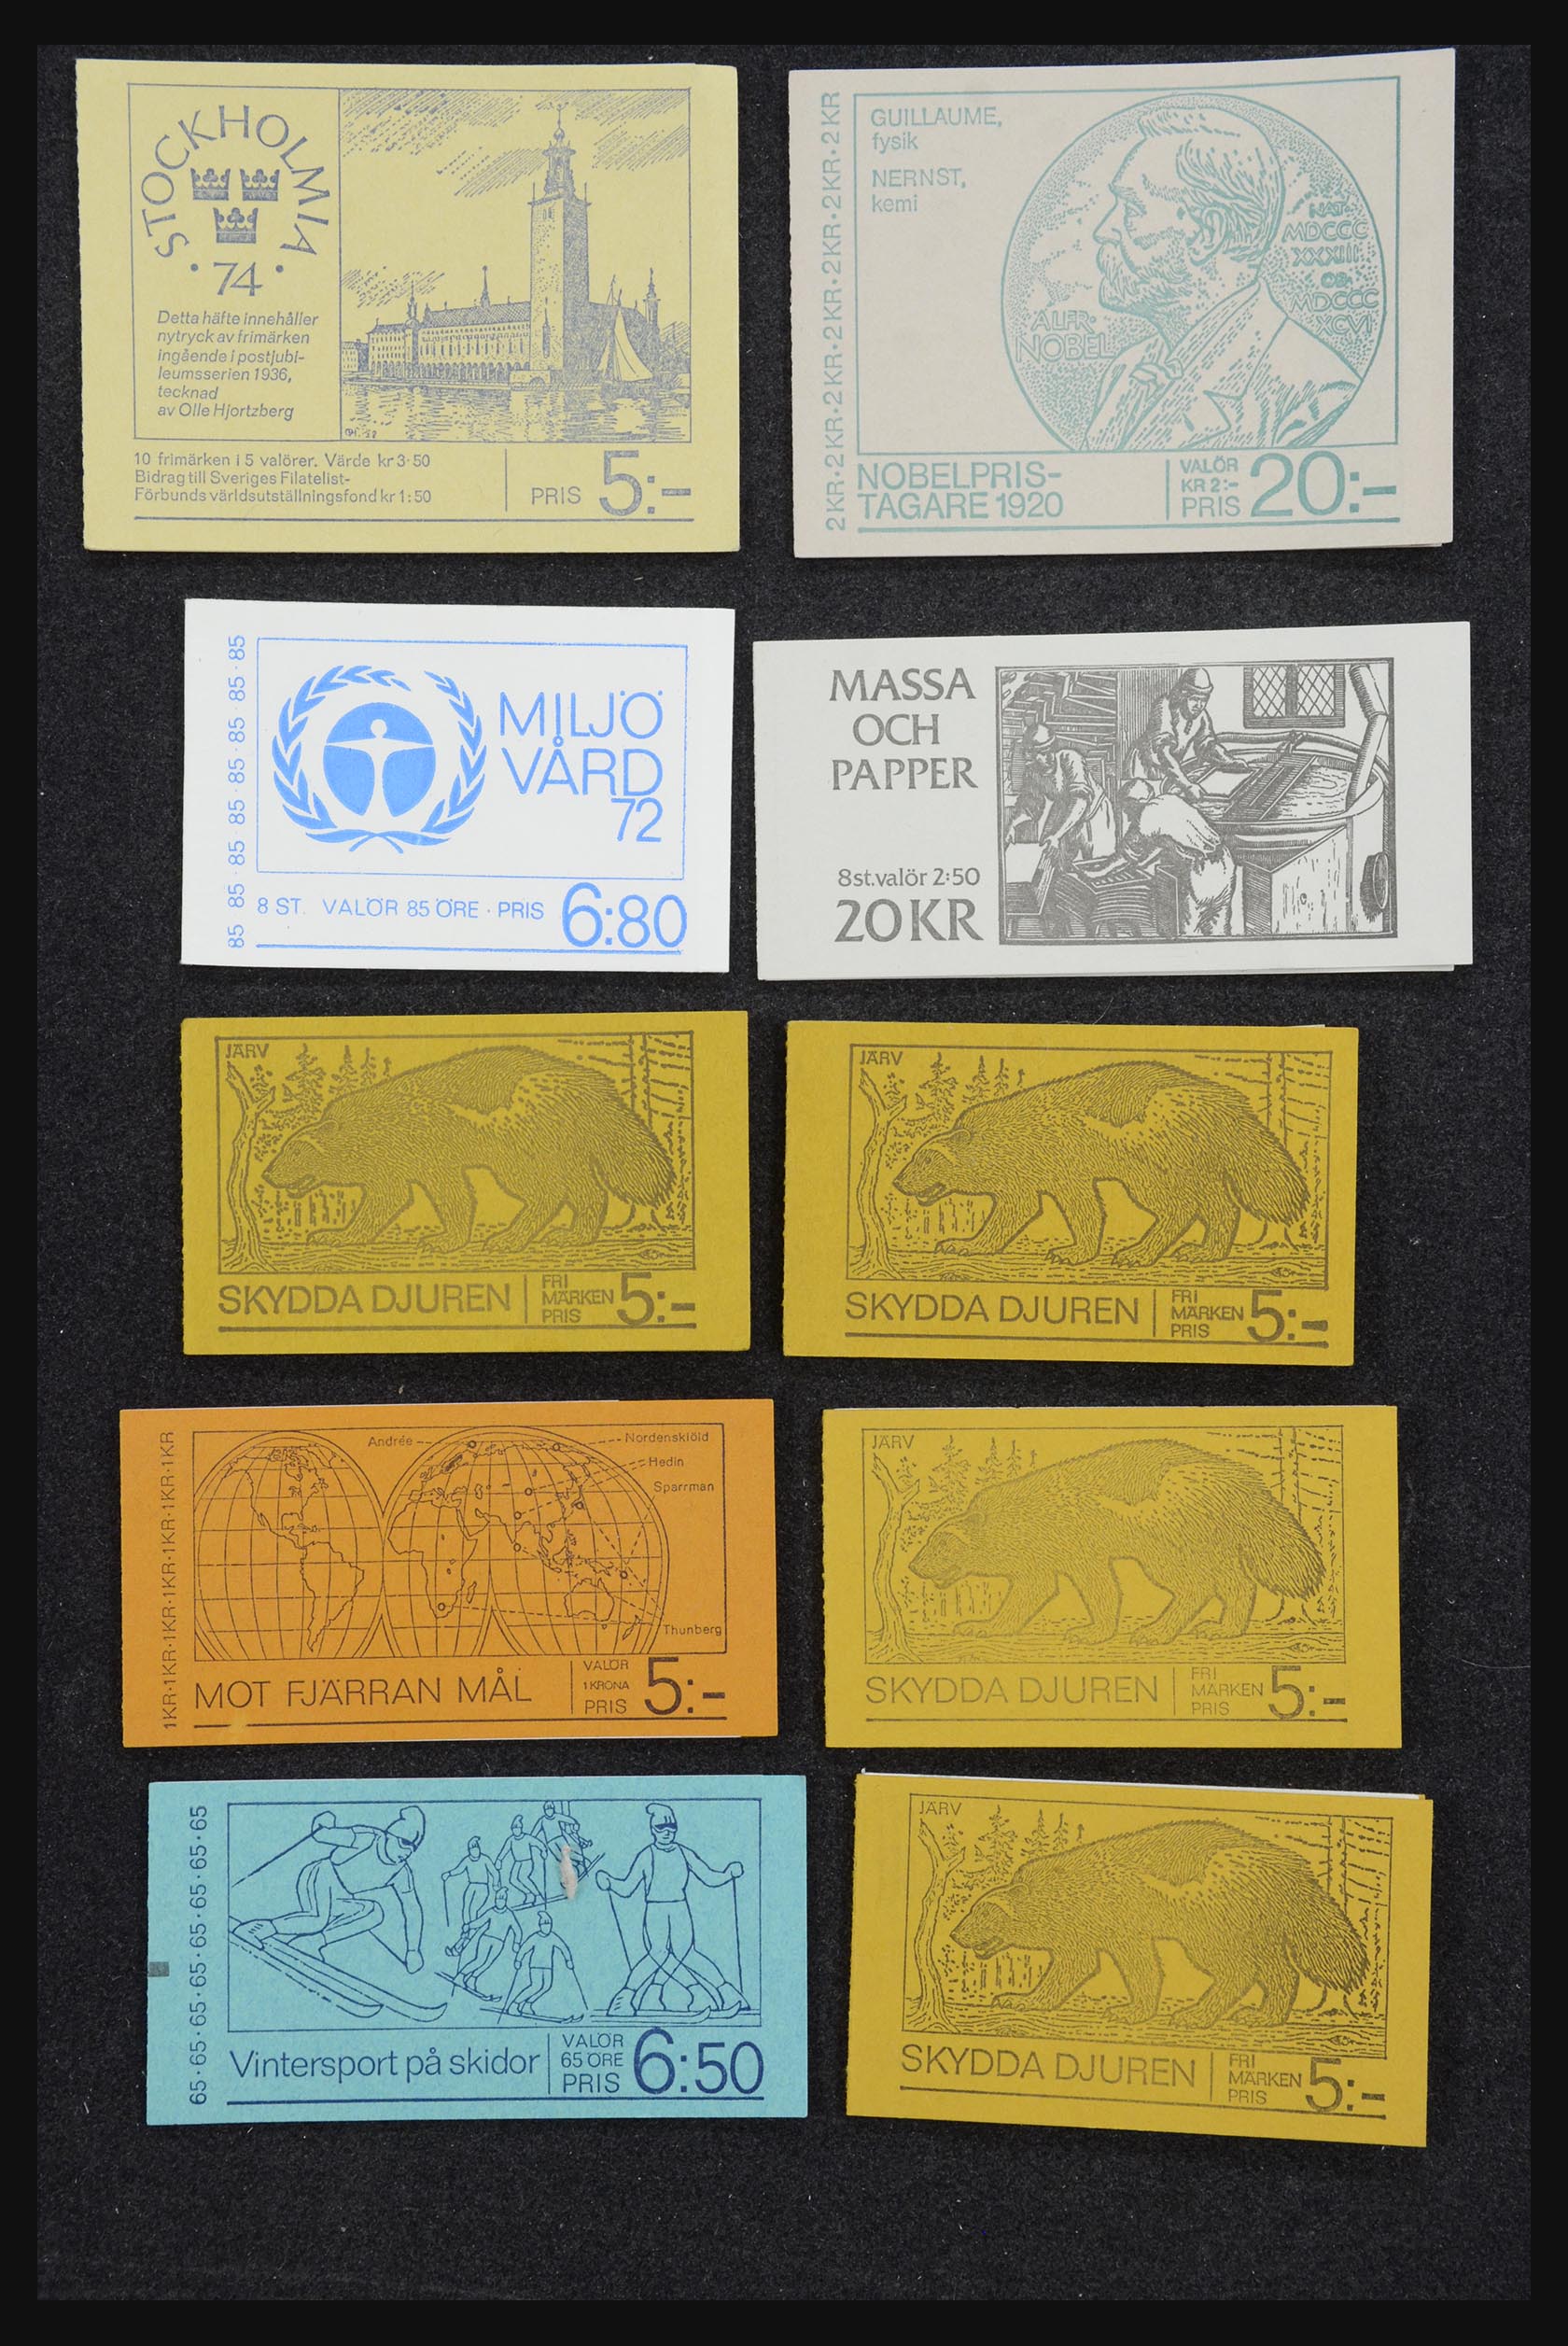 32026 064 - 32026 Sweden stampbooklets 1949-1990.